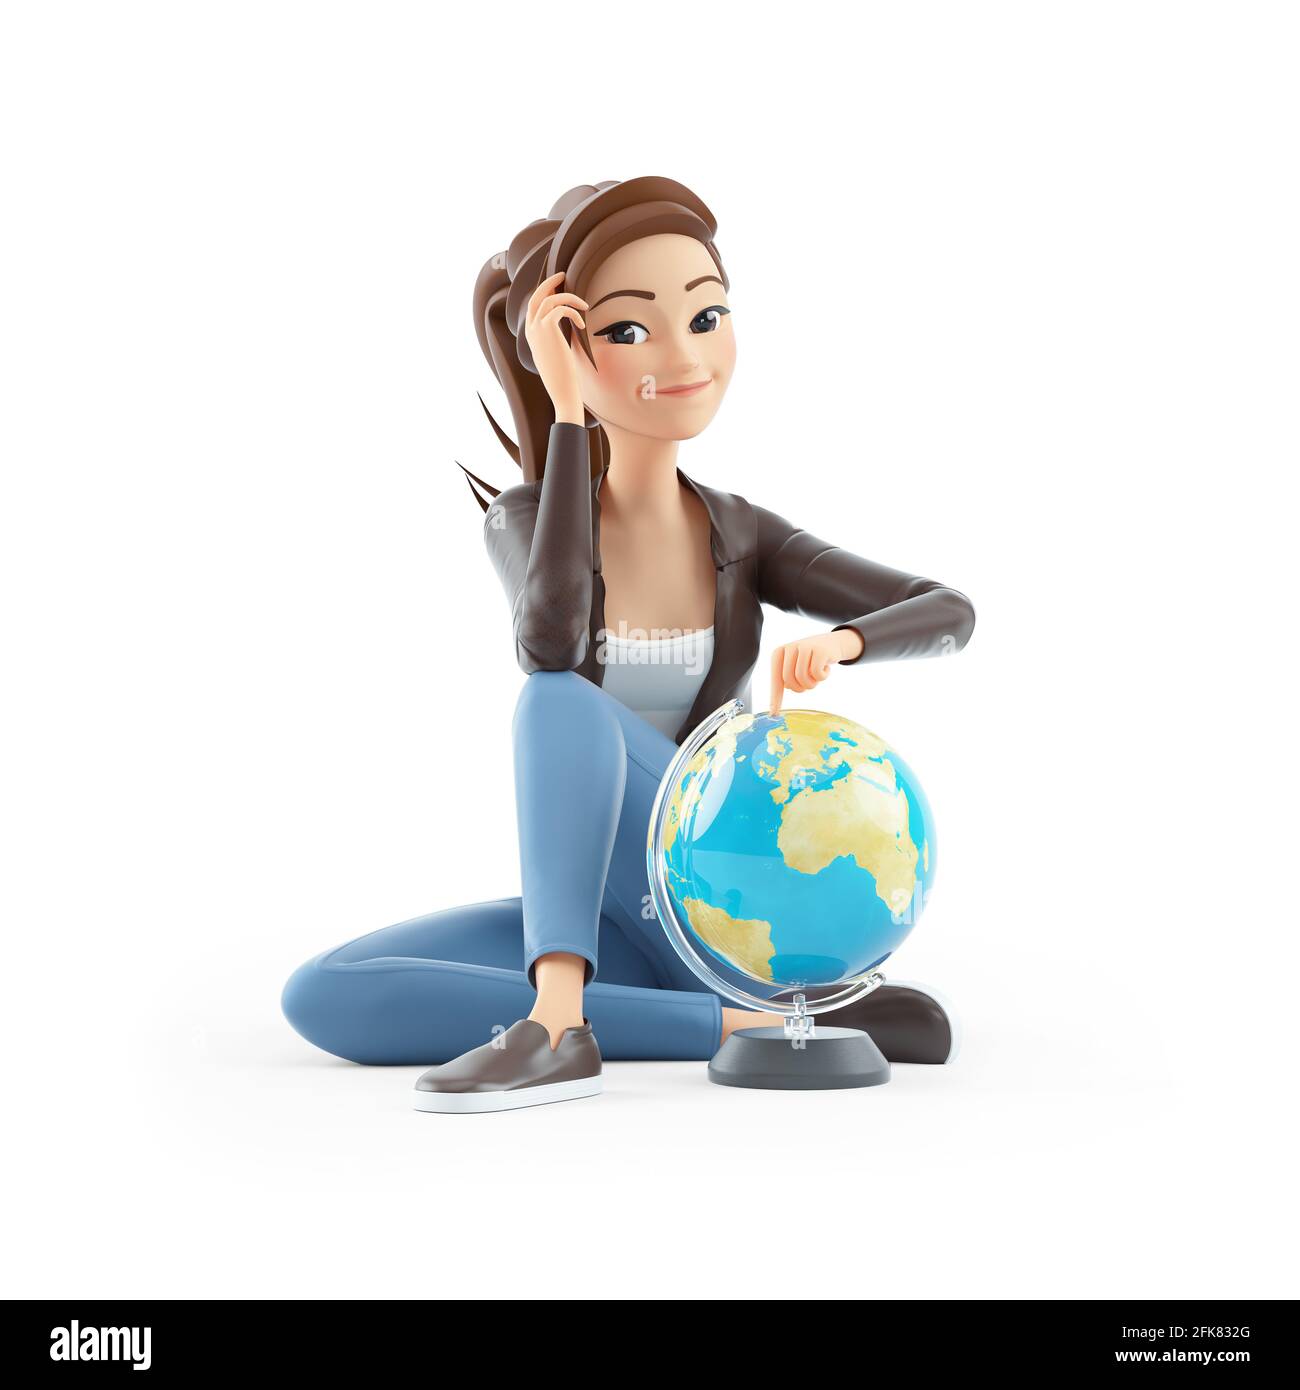 donna cartoon 3d seduta sul pavimento con globo terrestre, illustrazione isolata su sfondo bianco Foto Stock